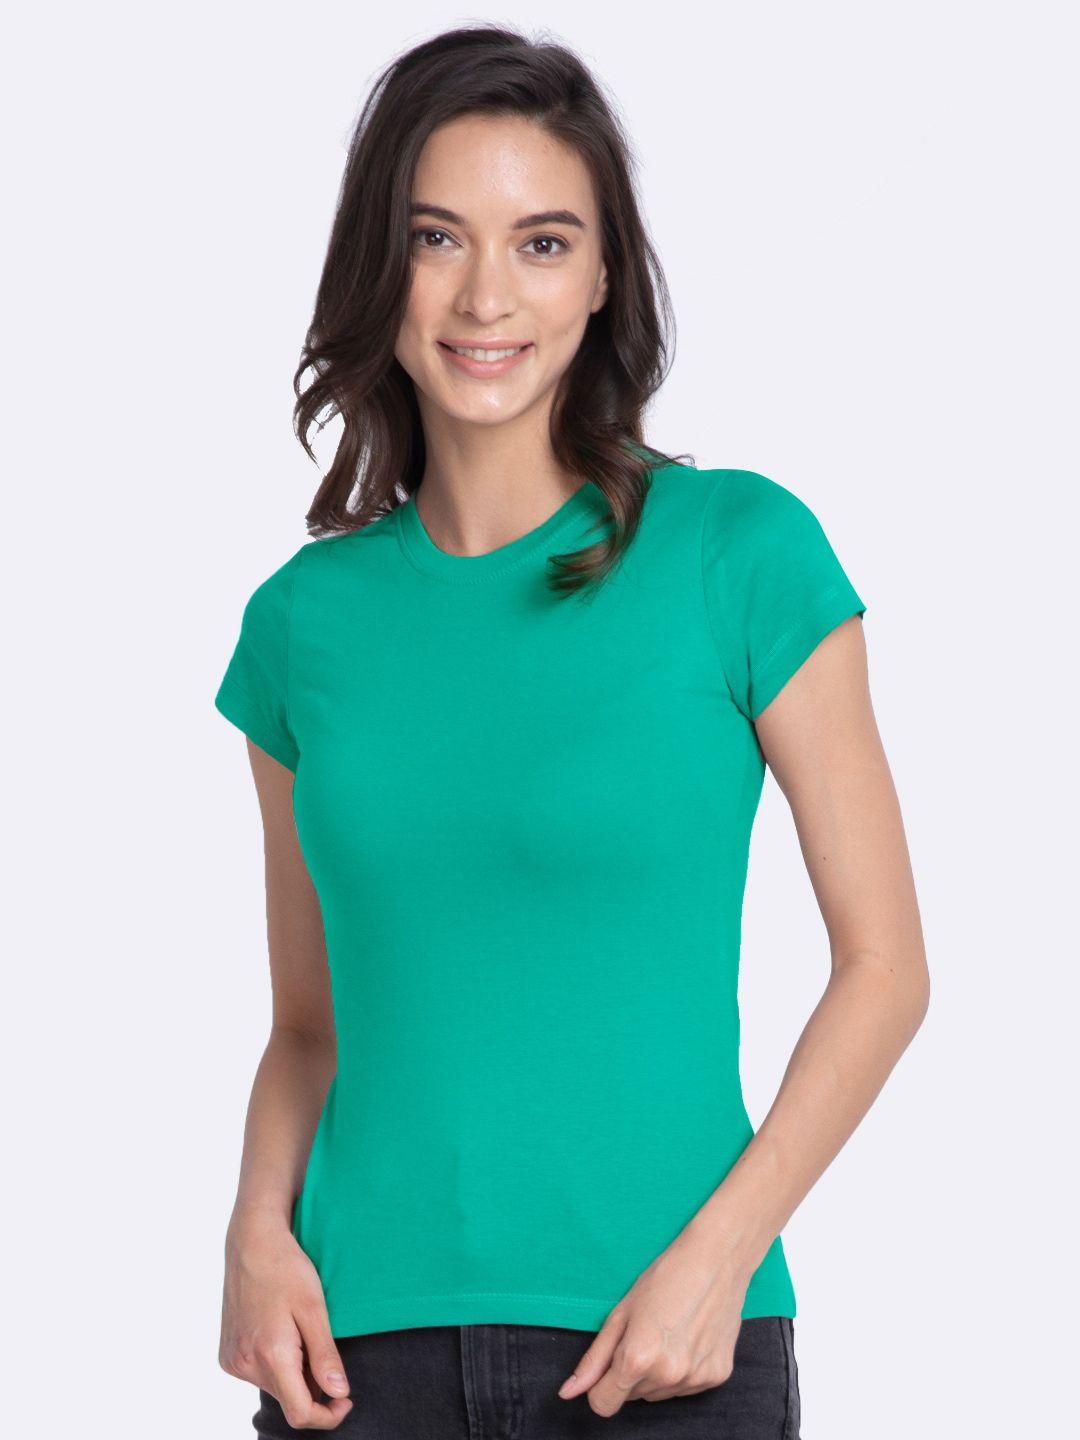 bewakoof-women-green-pure-cotton-t-shirt